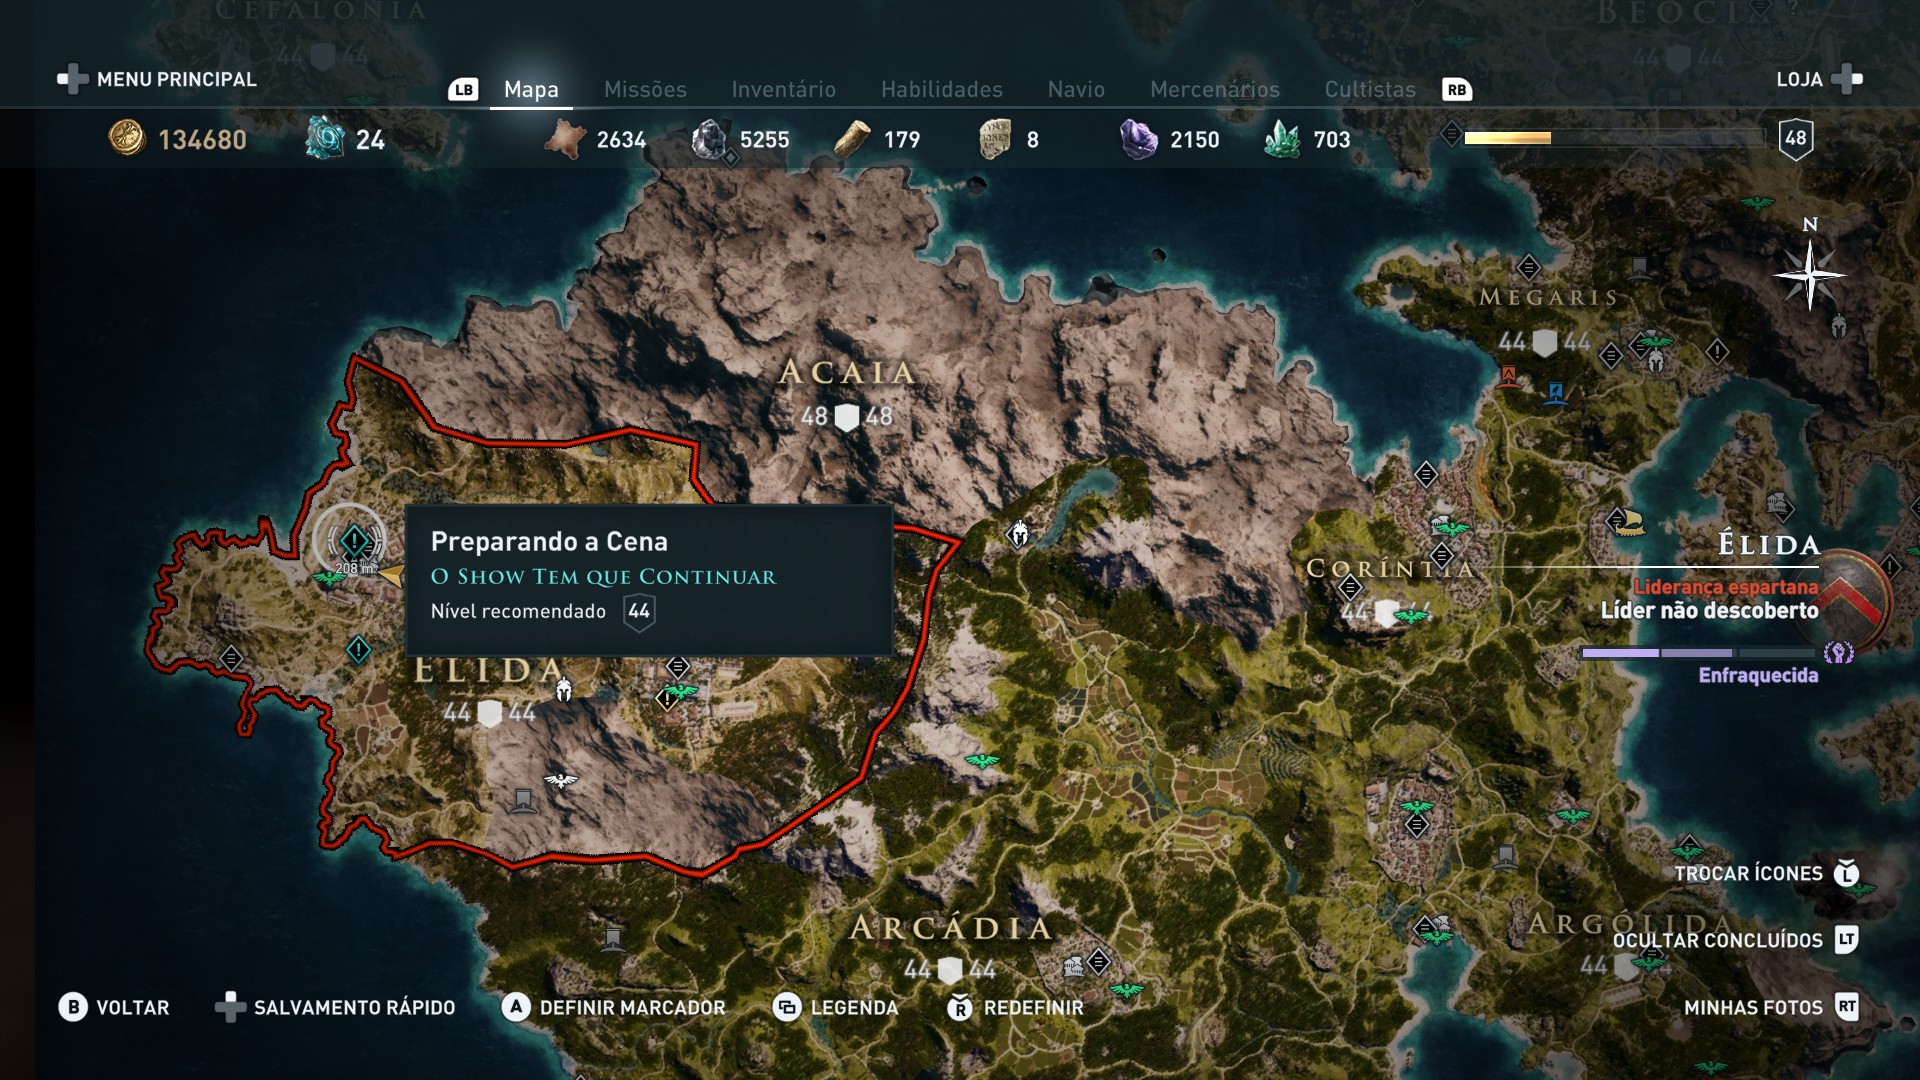 Assassin's Creed Odyssey (Multi) - Guia de Troféus - GameBlast